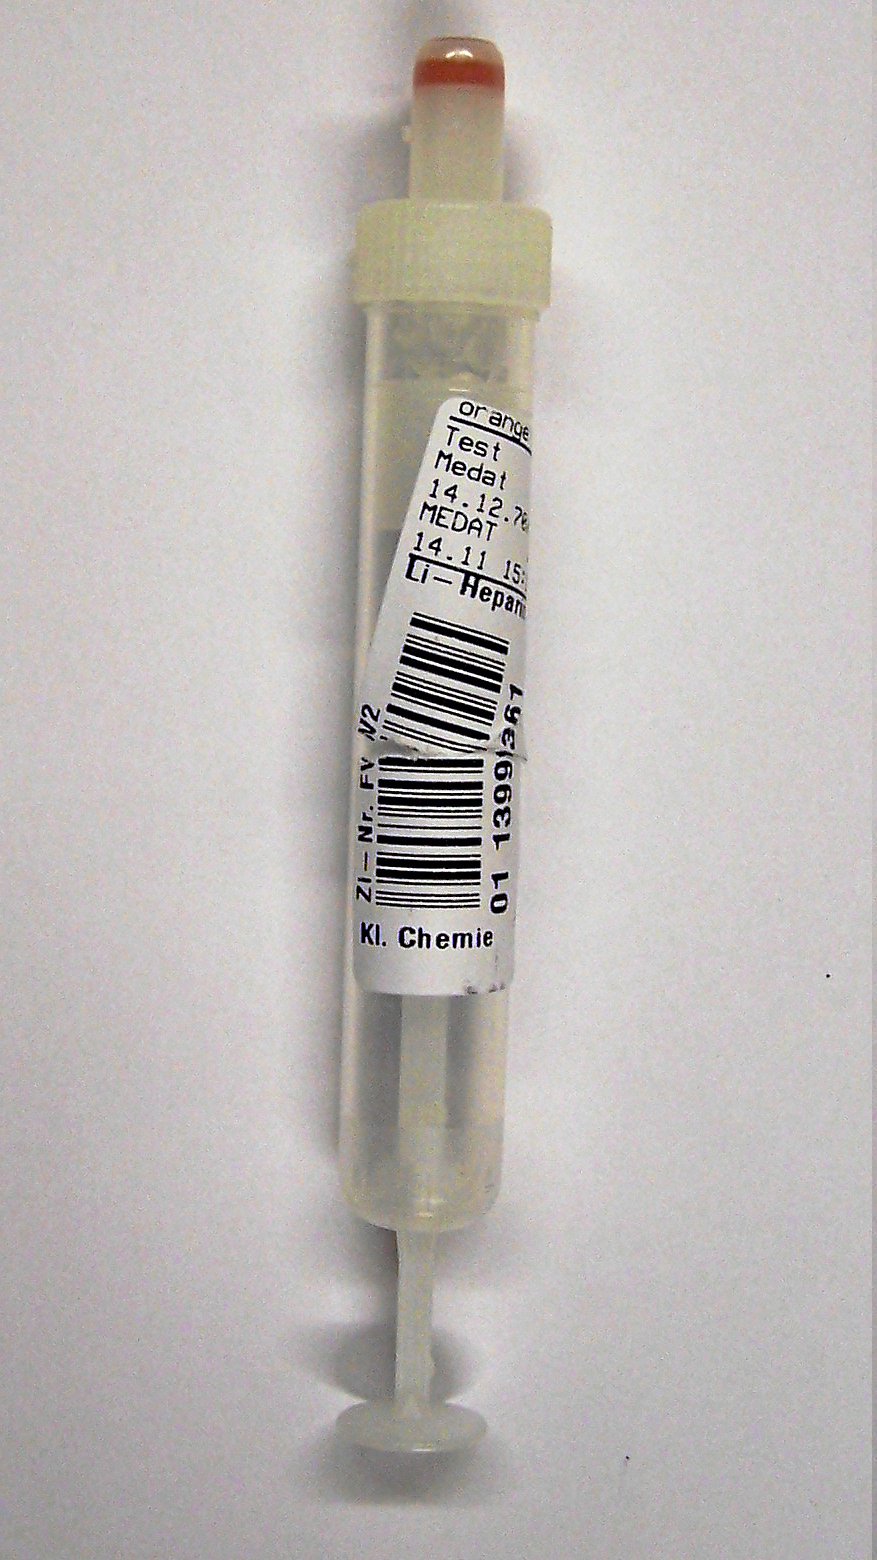 Bild einer Serummonovette mit einem Patientenetikett dass quer eingerissen ist.